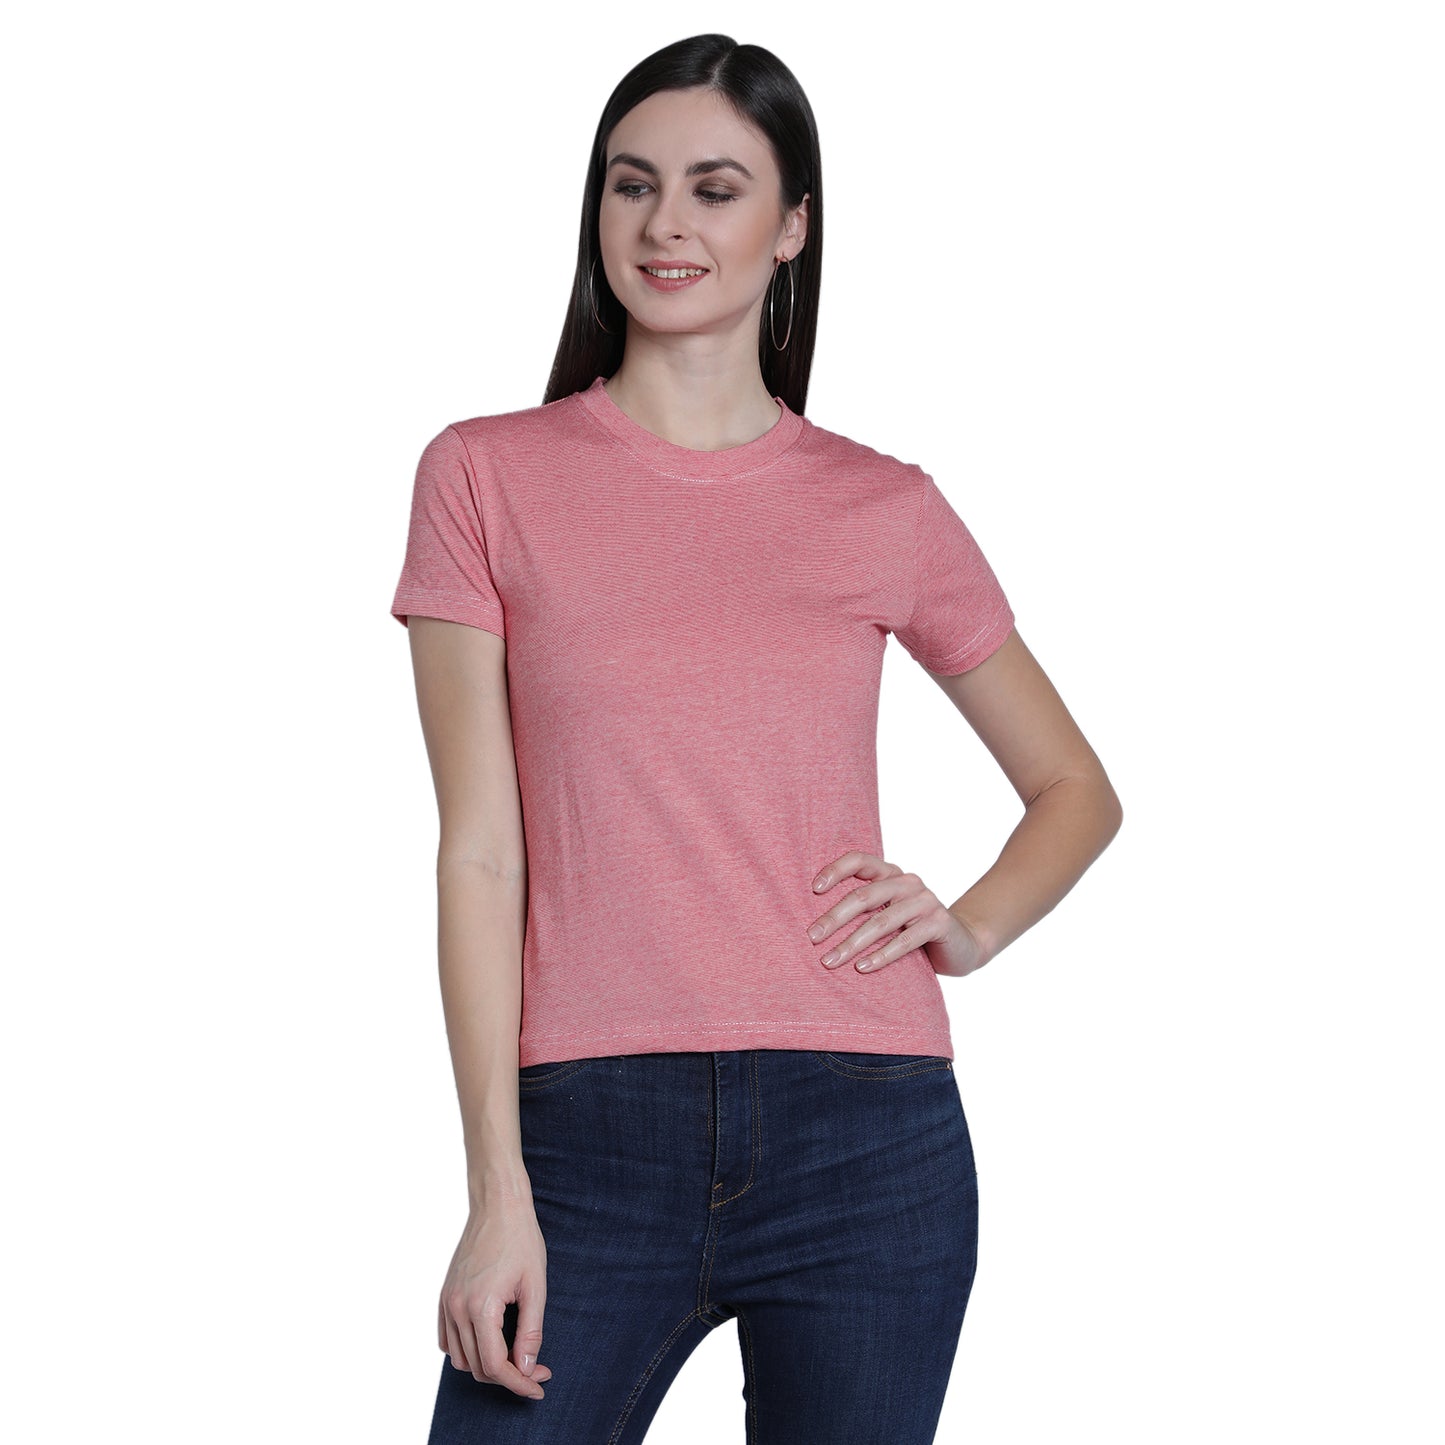 Peachy Blush Women's Tshirt